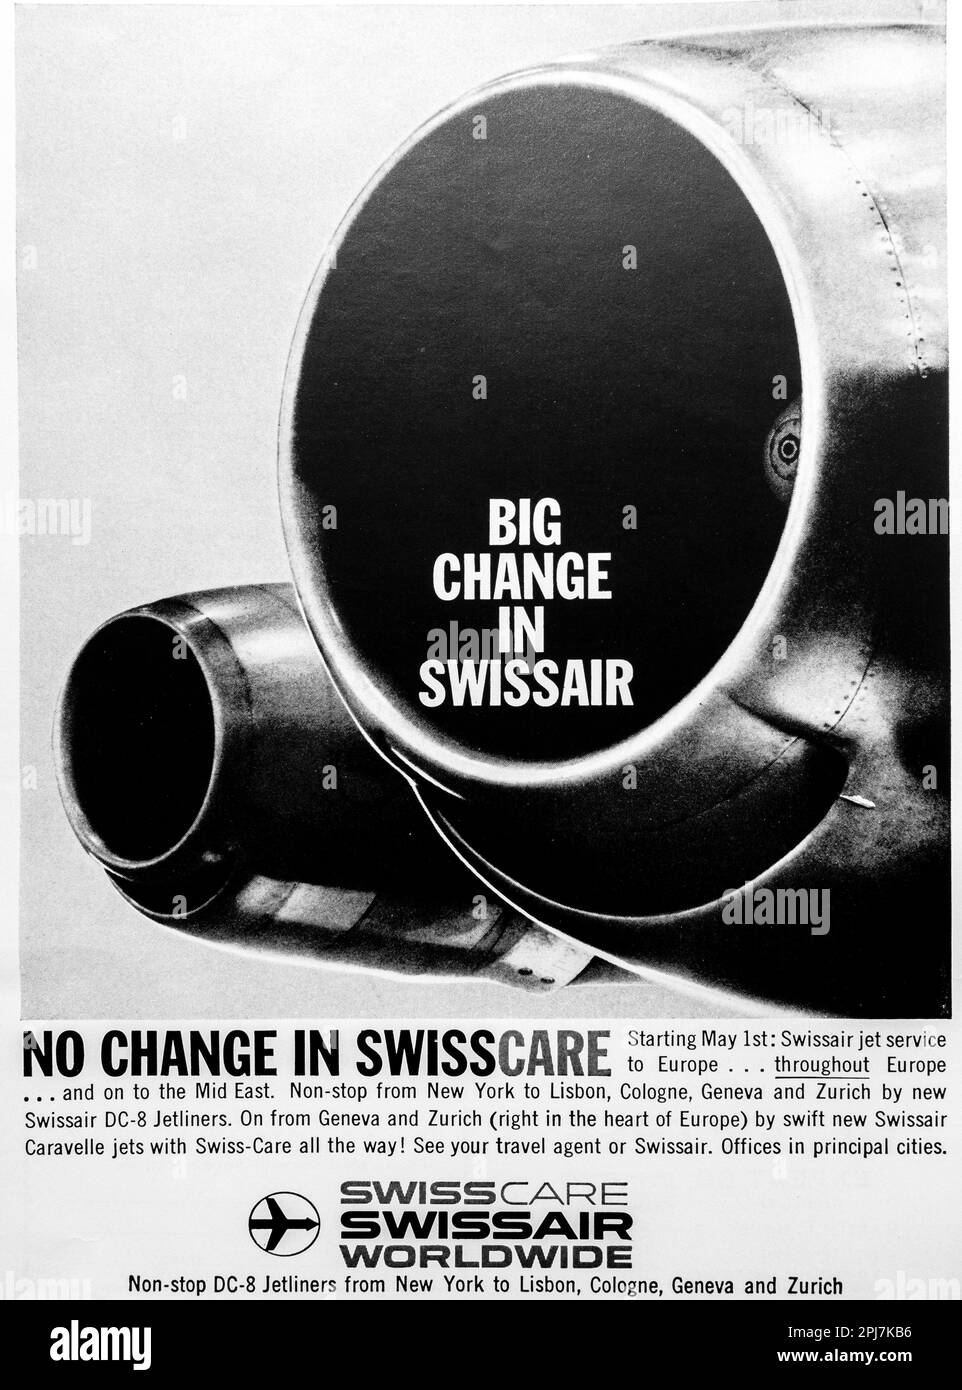 Pubblicità Swissair SwissCare su una rivista NatGeo, novembre 1959 Foto Stock